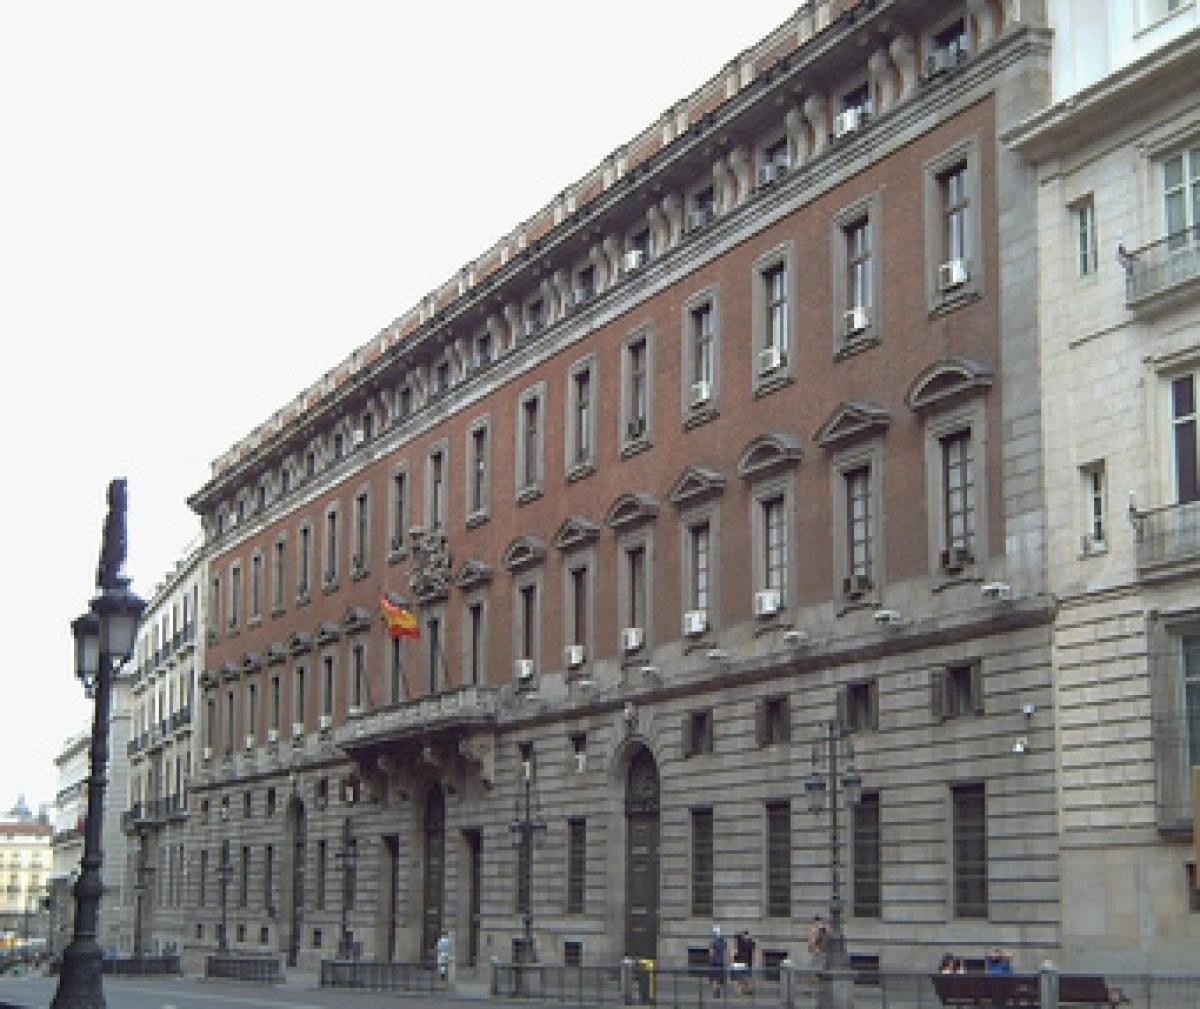 Ministerio de Hacienda y Administraciones Pblicas, Real Casa de la Aduana, Madrid